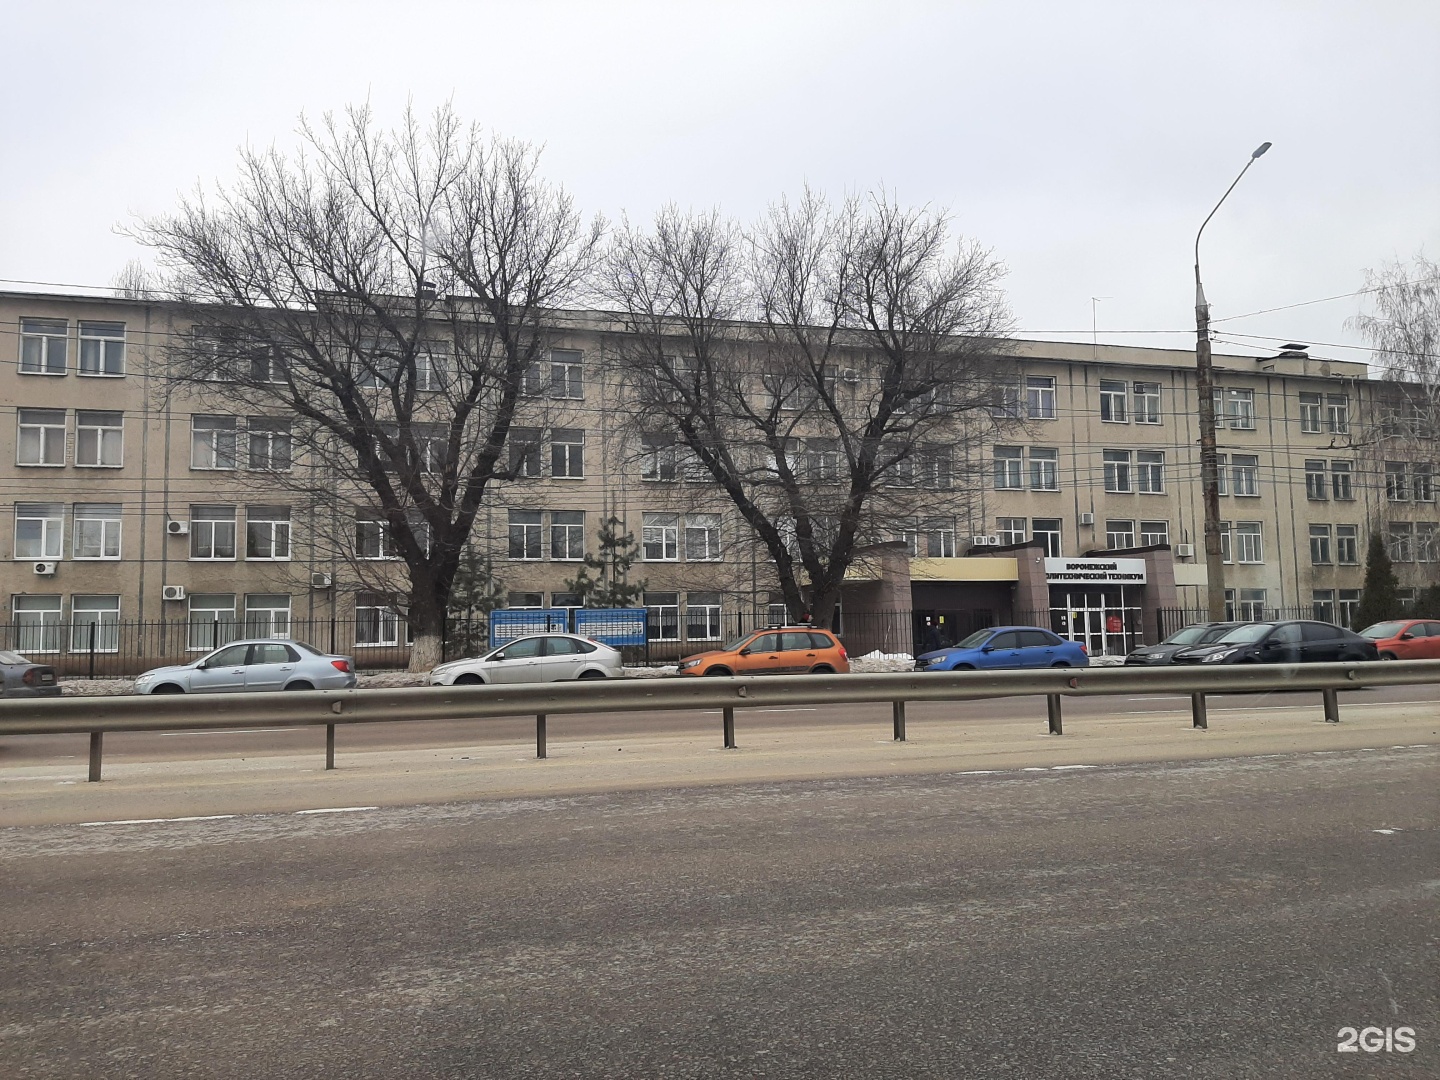 Воронежские колледжи после 9